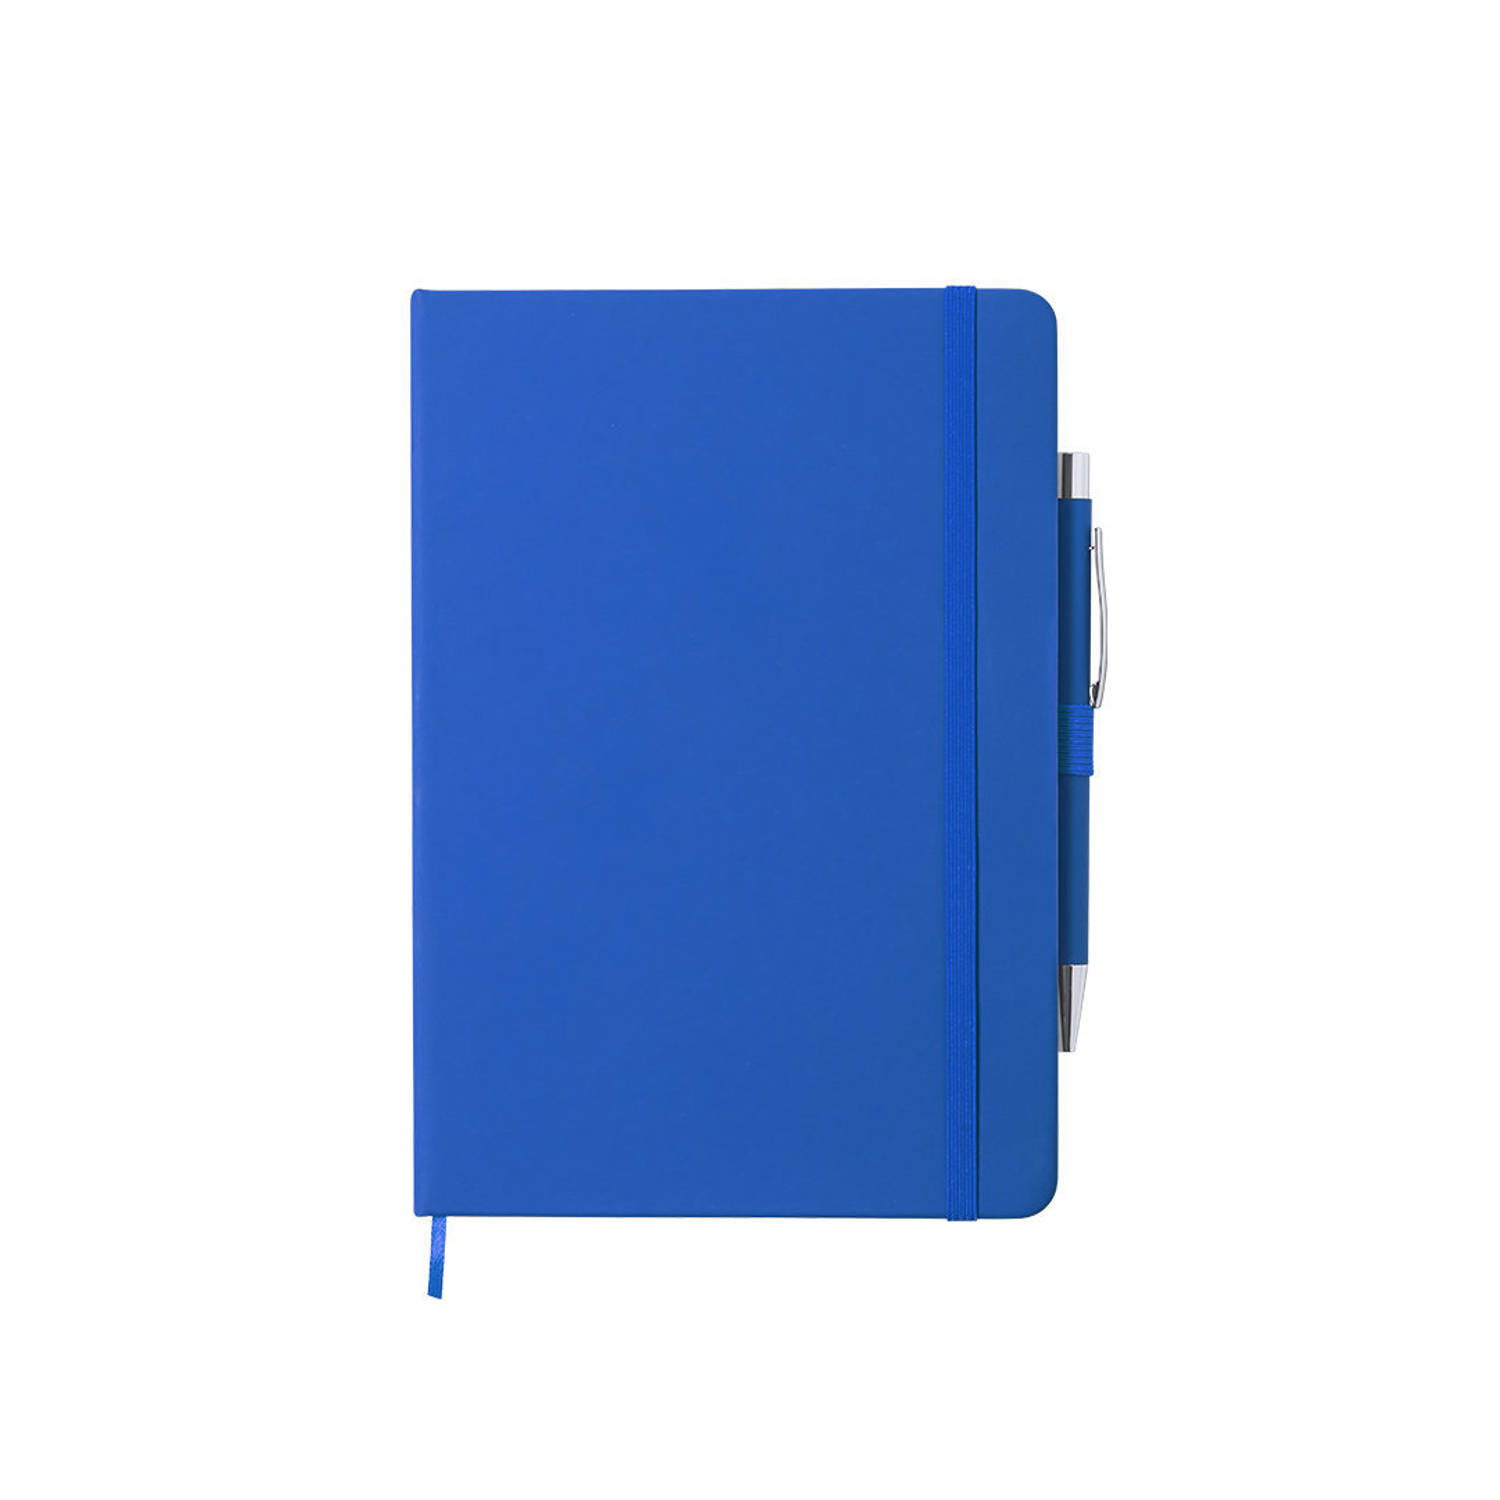 Luxe notitieboekje gelinieerd blauw met elastiek en pen A5 formaat - Notitieboek